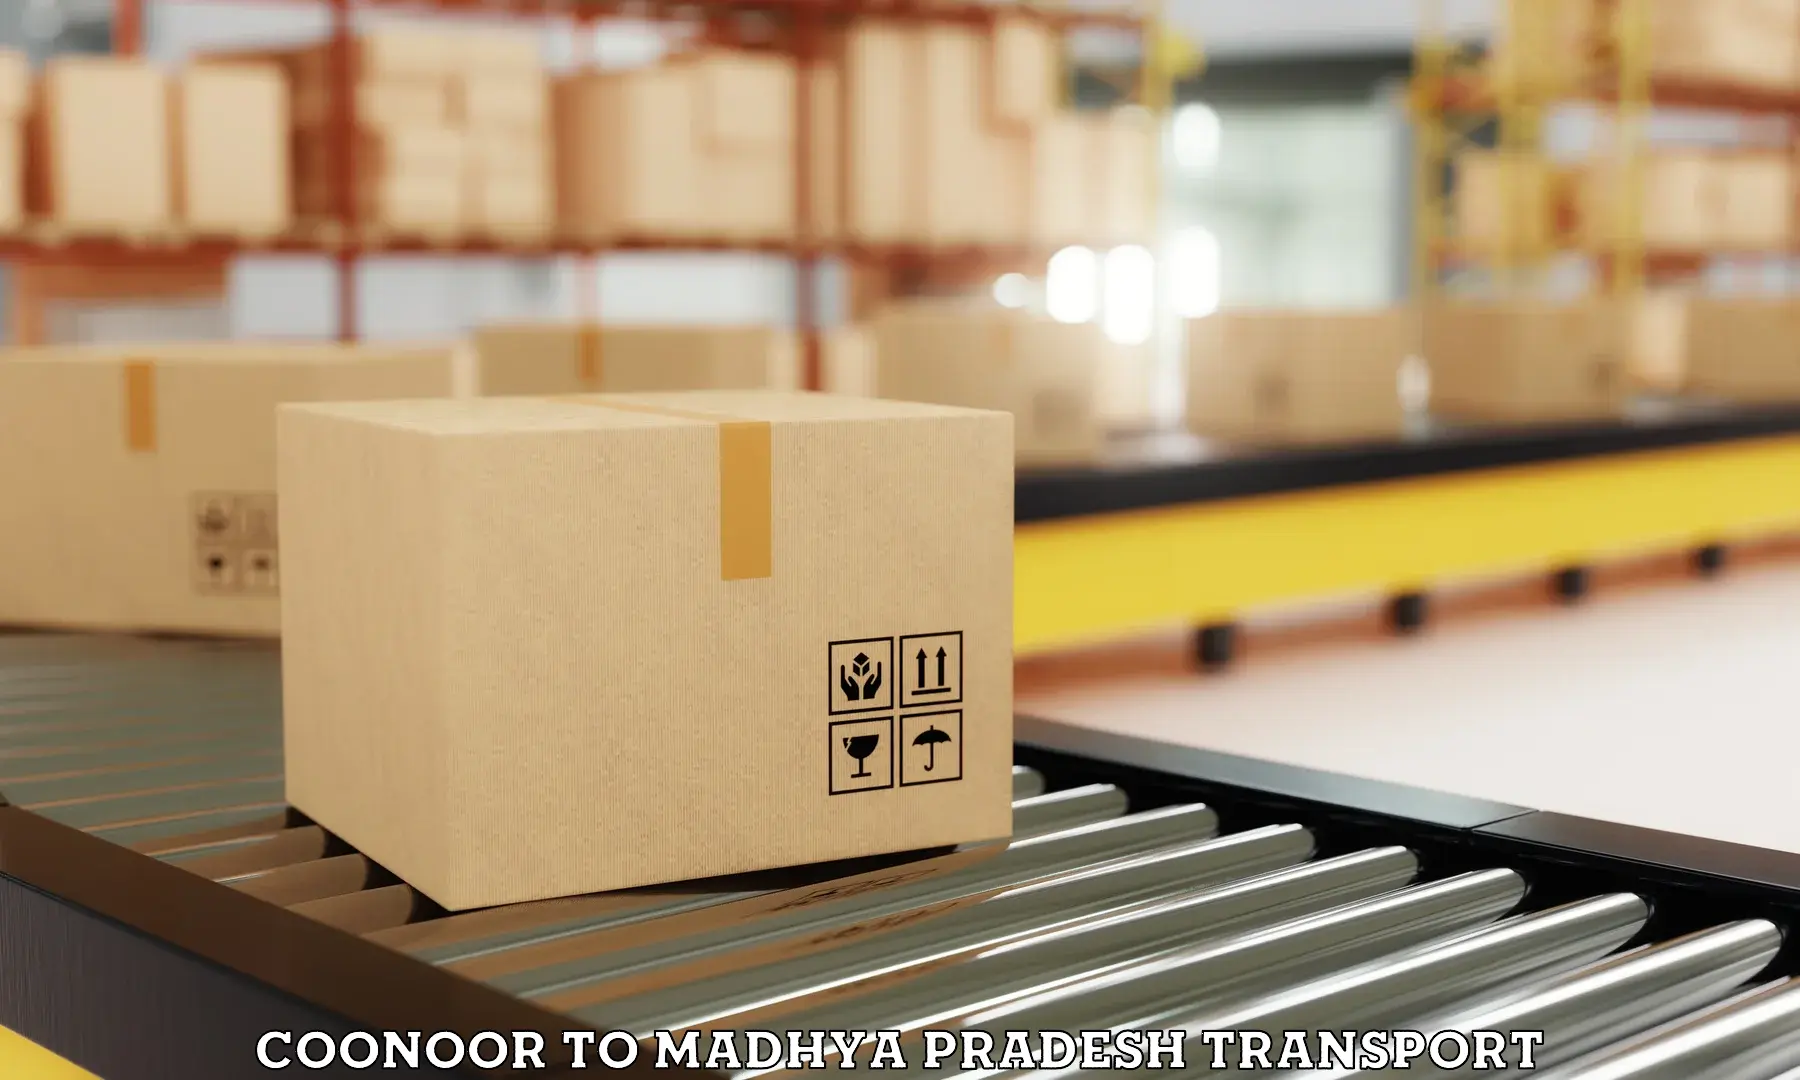 Delivery service Coonoor to Manasa